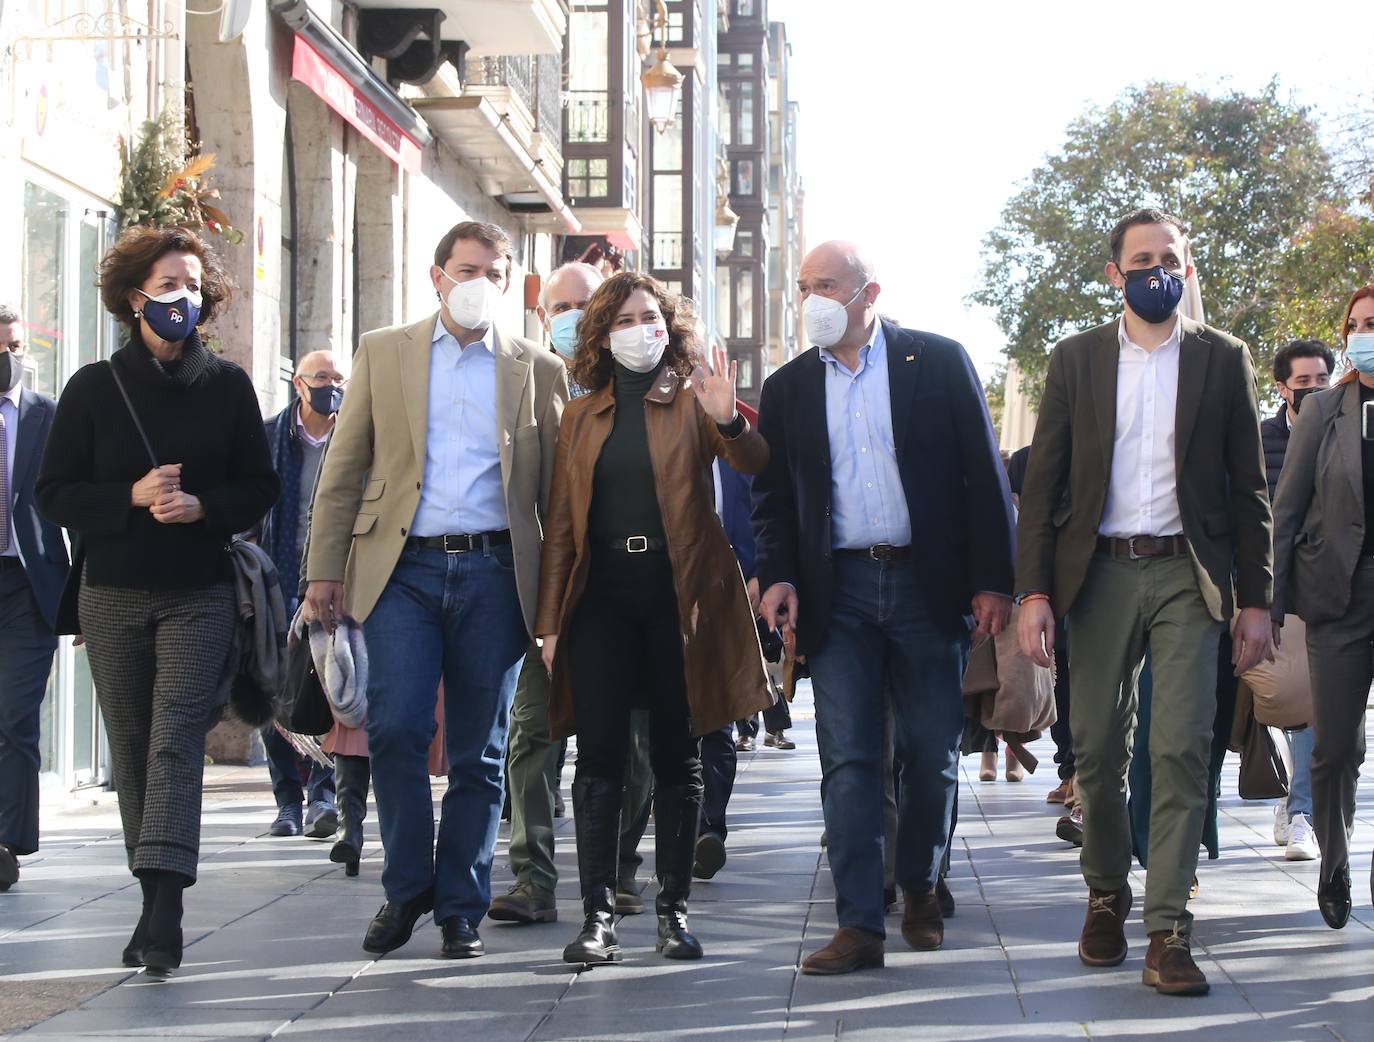 El candidato del PP de Castilla y León a las elecciones autonómicas del 13 de febrero, Alfonso Fernández Mañueco, participa en un acto público en Valladolid junto a la presidenta de la Comunidad de Madrid, Isabel Díaz Ayuso.